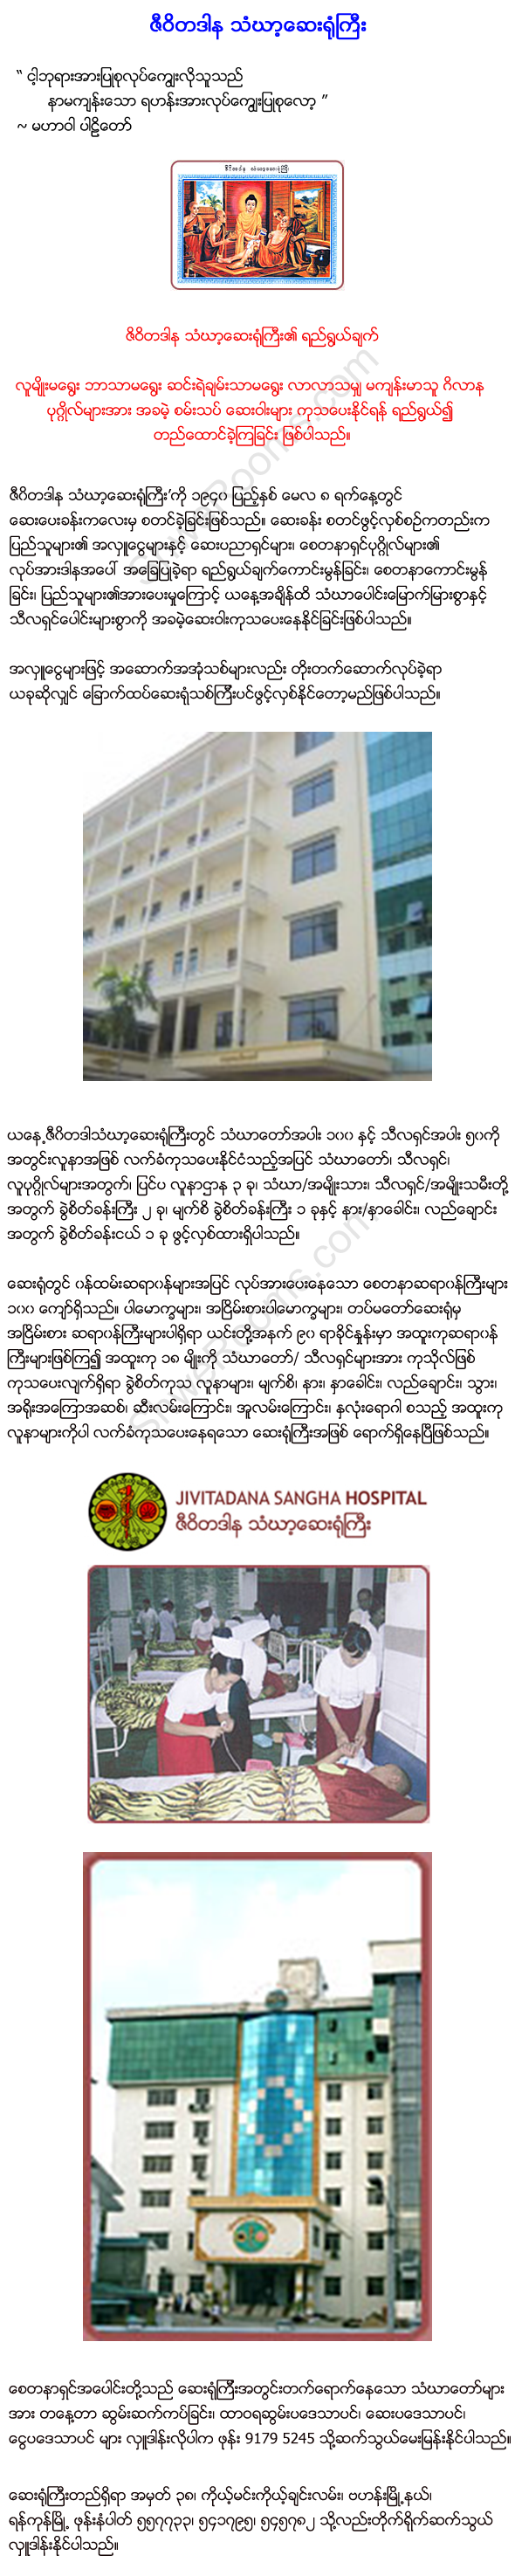 Jivitadana Sangha Hospital - Bahan